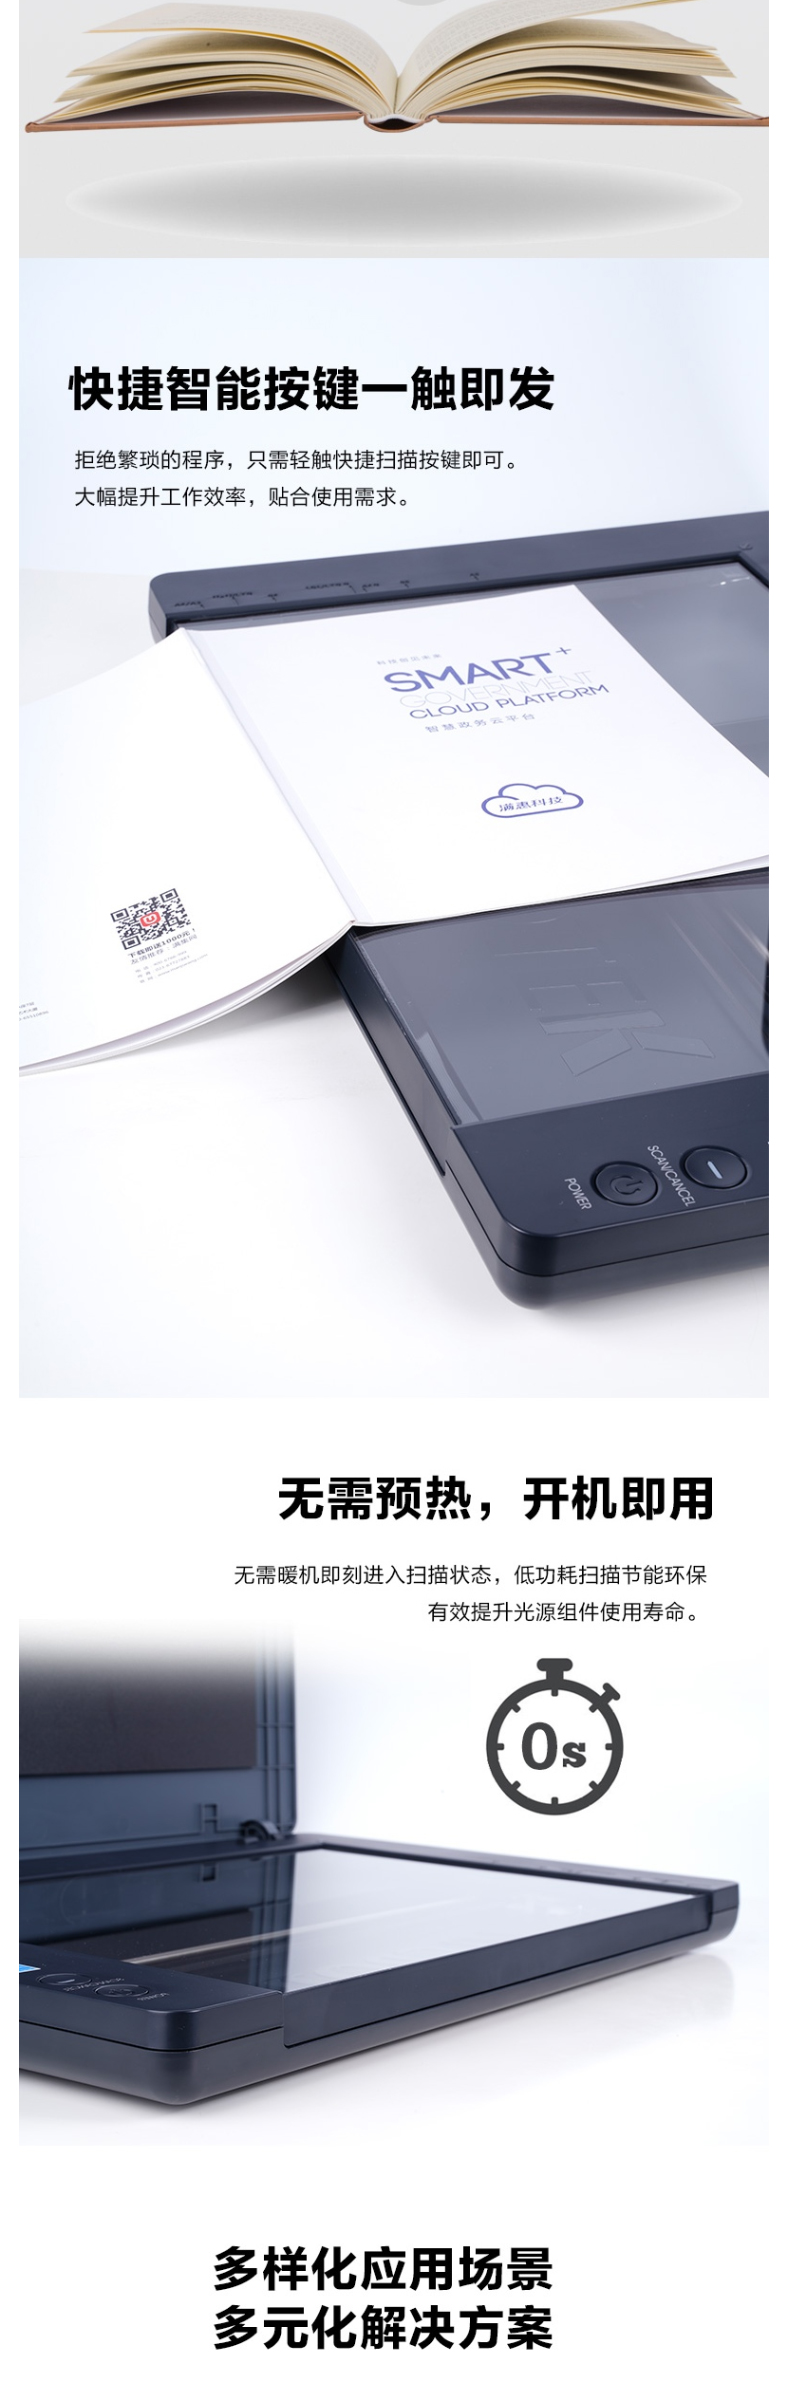 中晶 Microtek 高速平板扫描仪 FileScan1710XL 